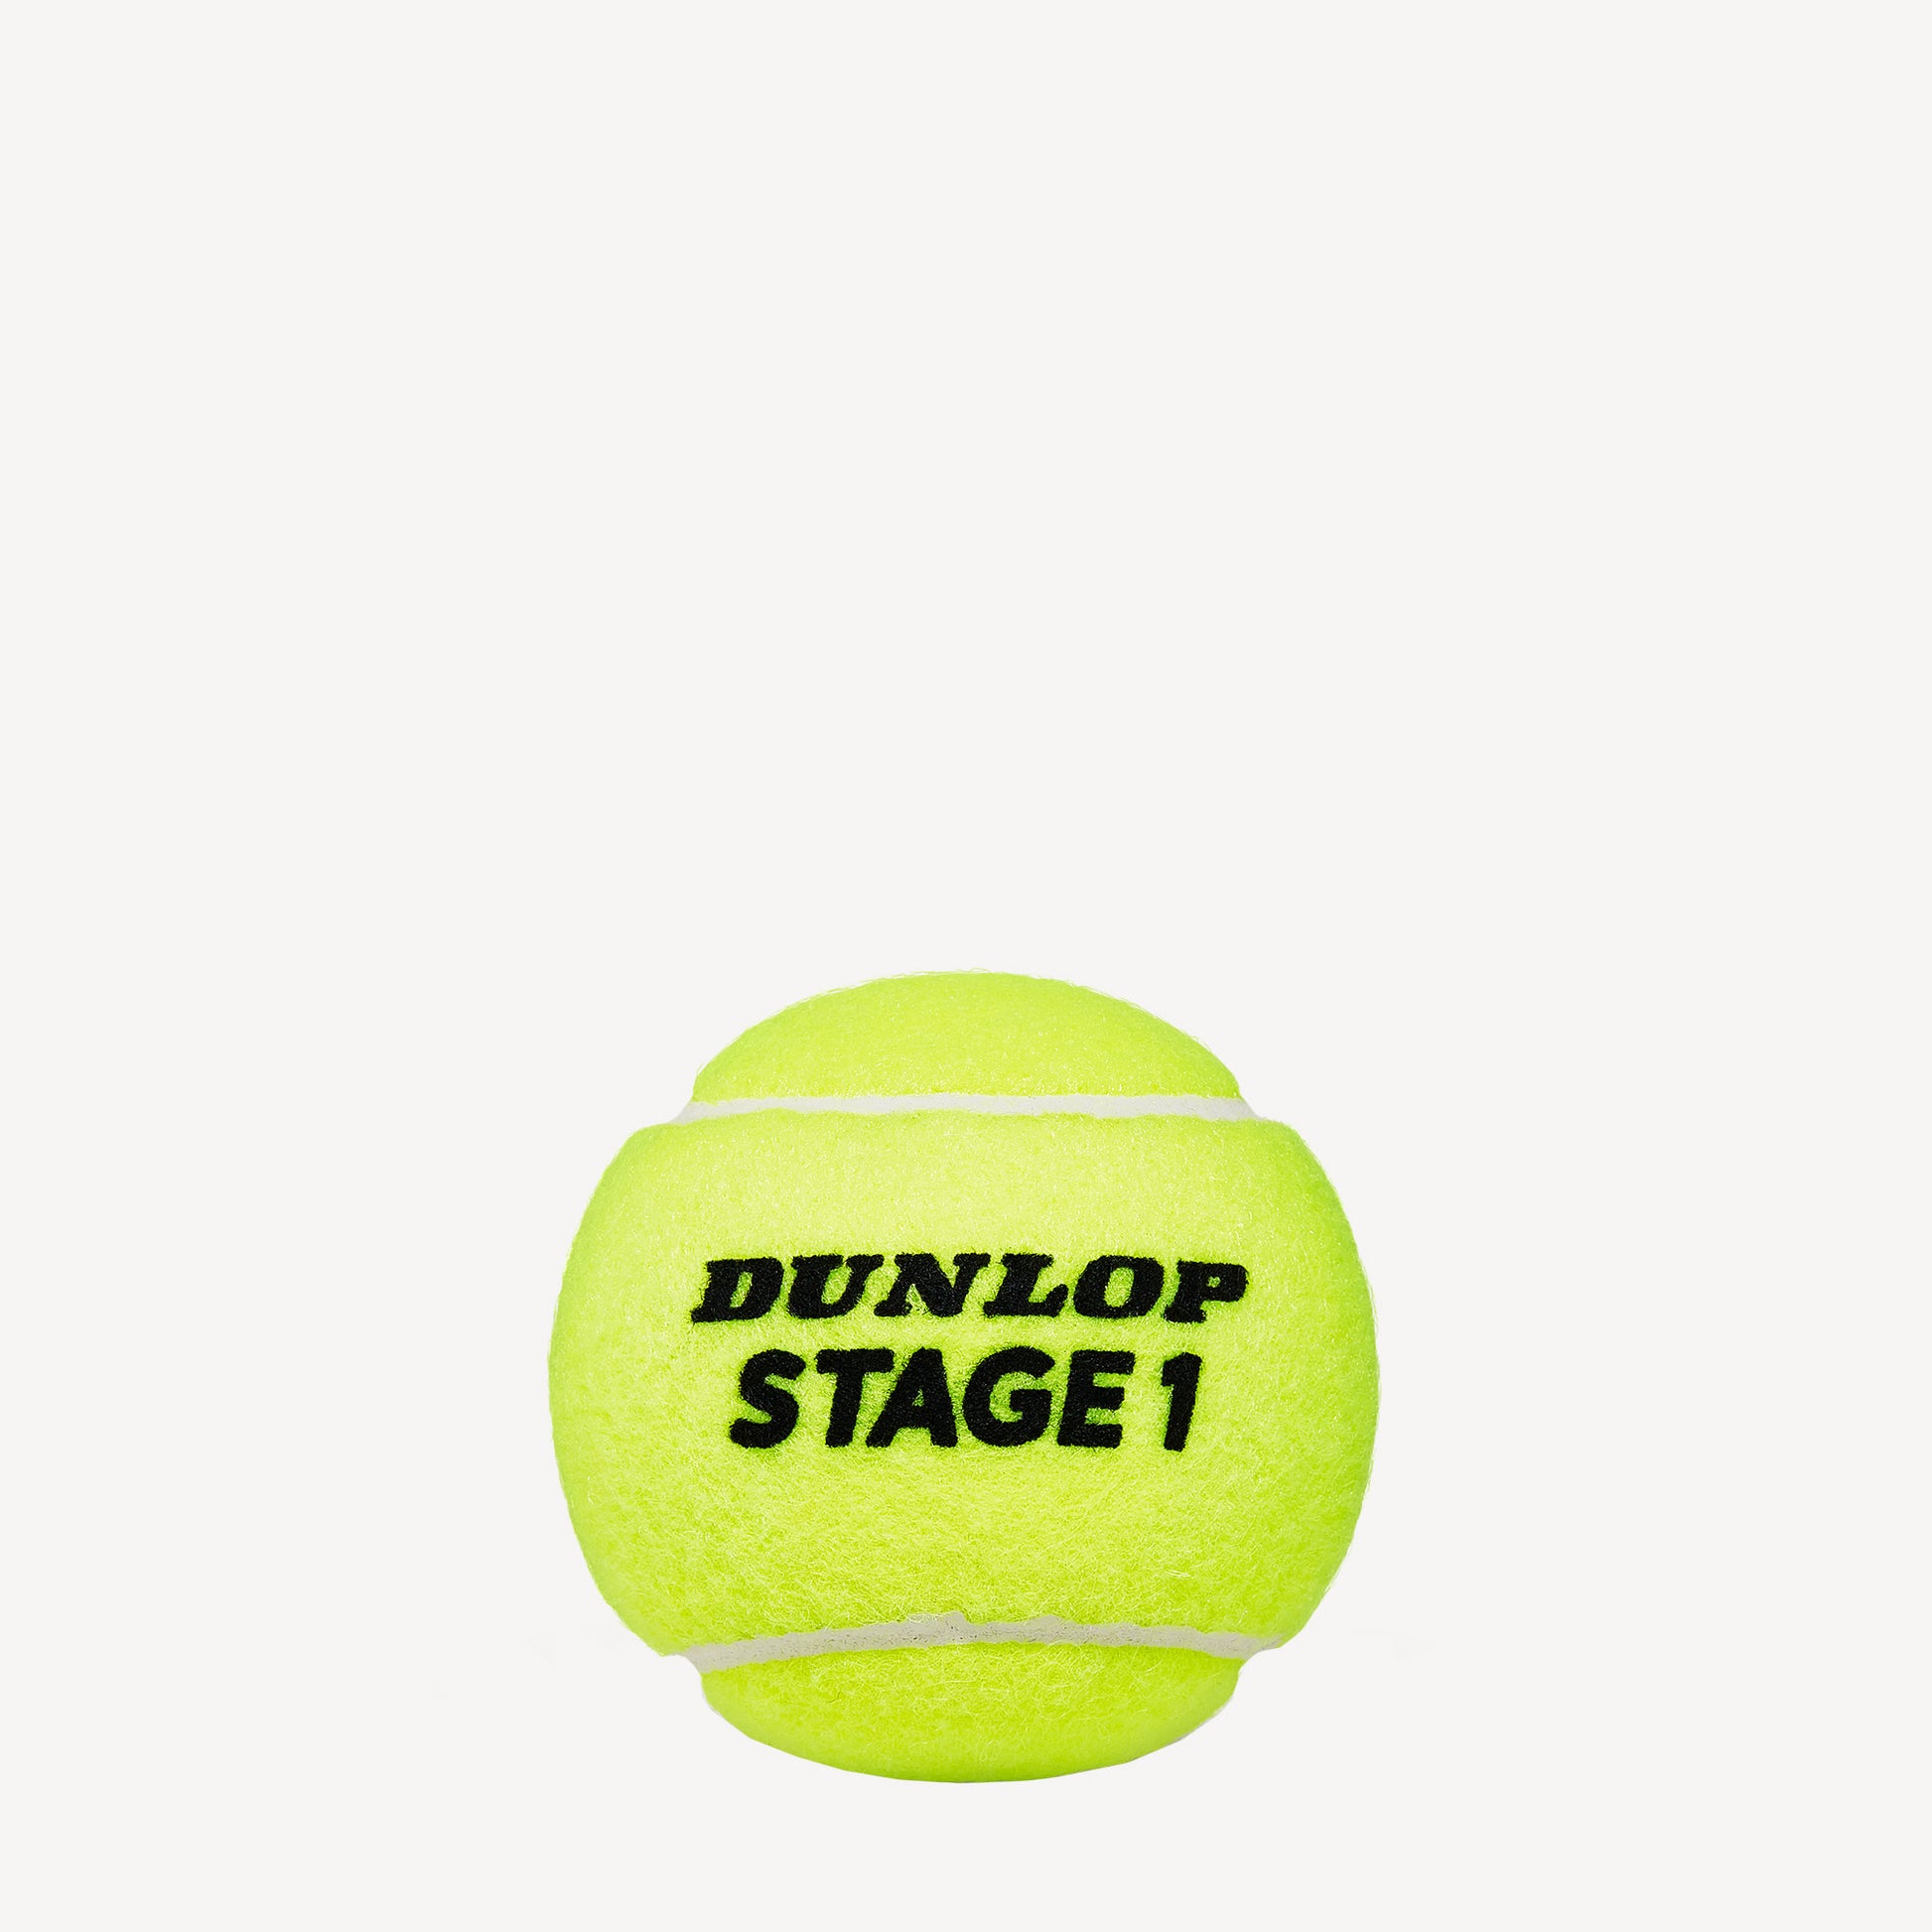 Dunlop Stage 1 Green 60 Tennis Balls Bucket 2